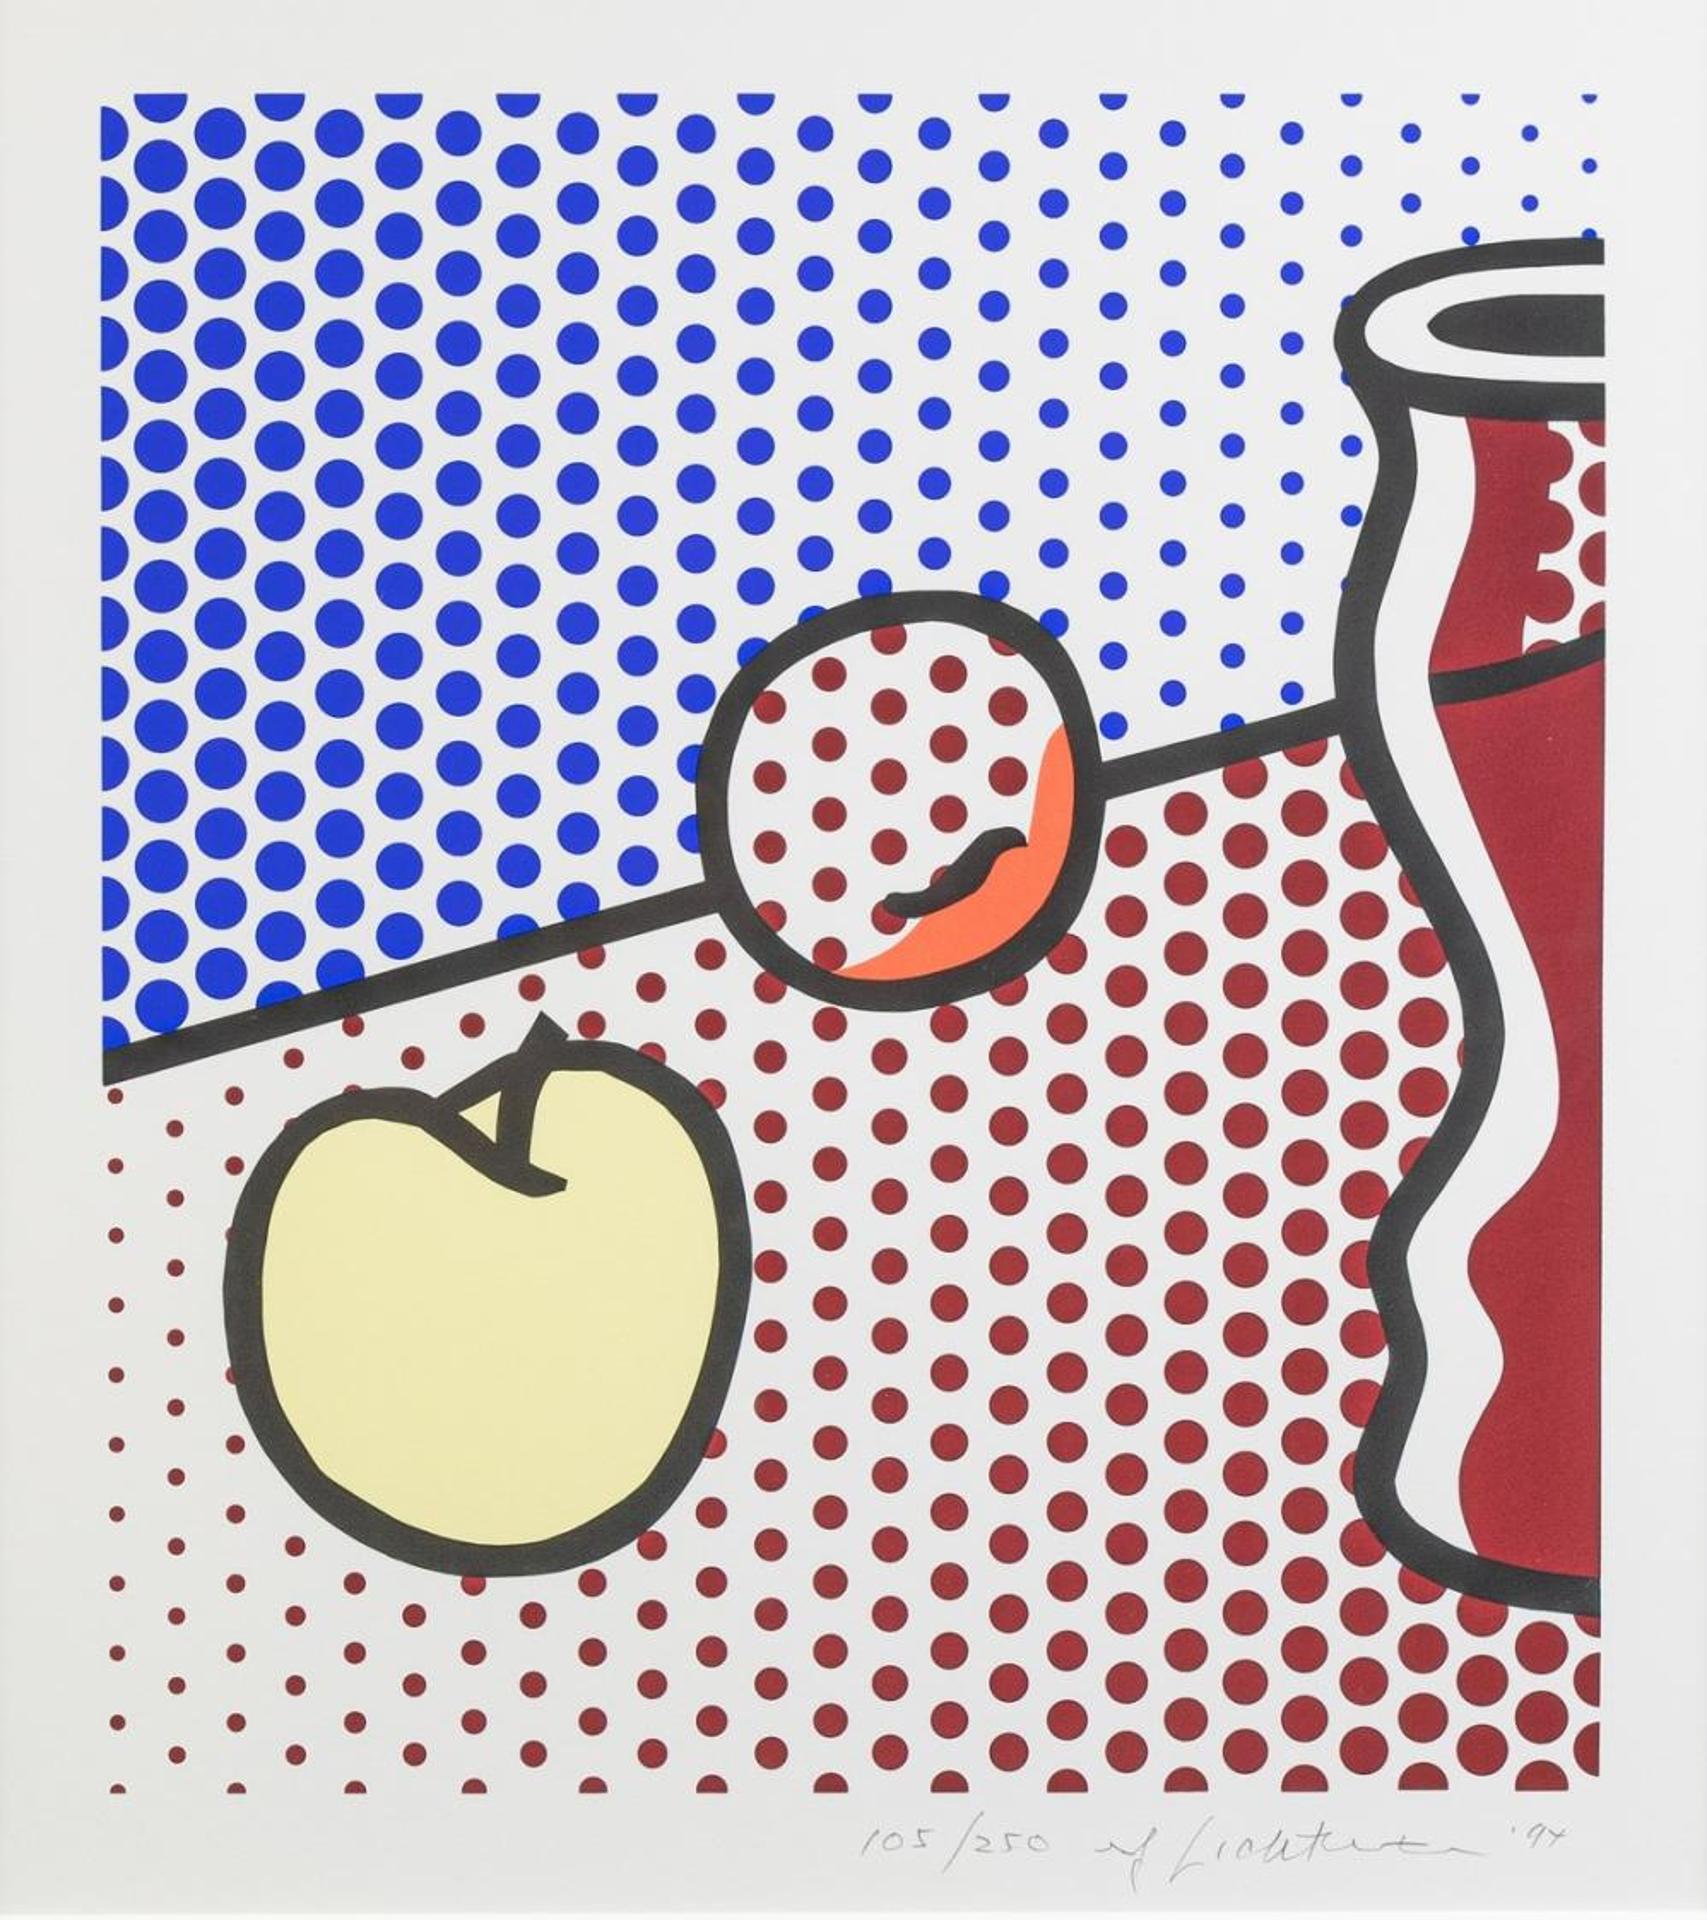 Roy Lichtenstein (1923-1997) - Still Life with Red Jar